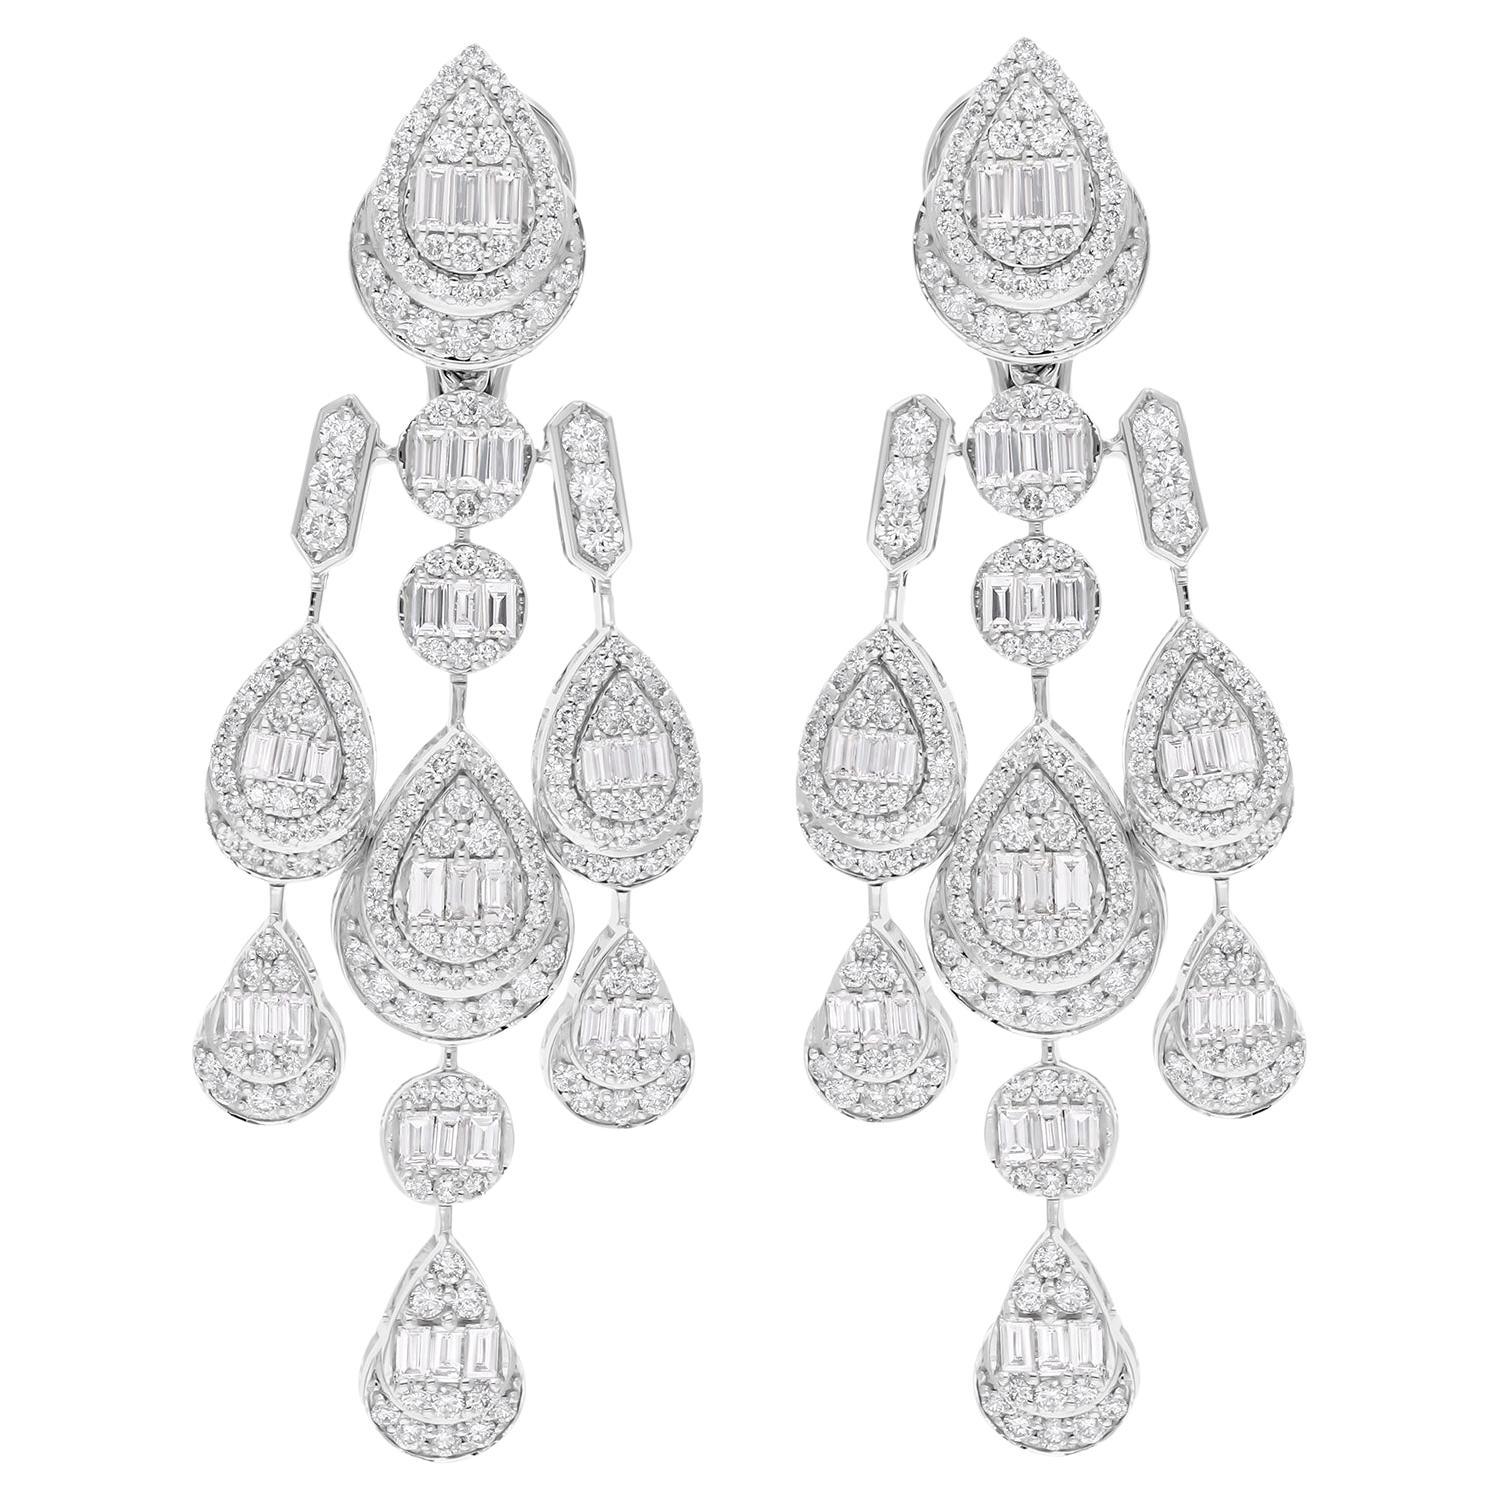 Baguette Diamond Chandelier Earrings Solid 14 Karat White Gold Handmade Jewelry For Sale